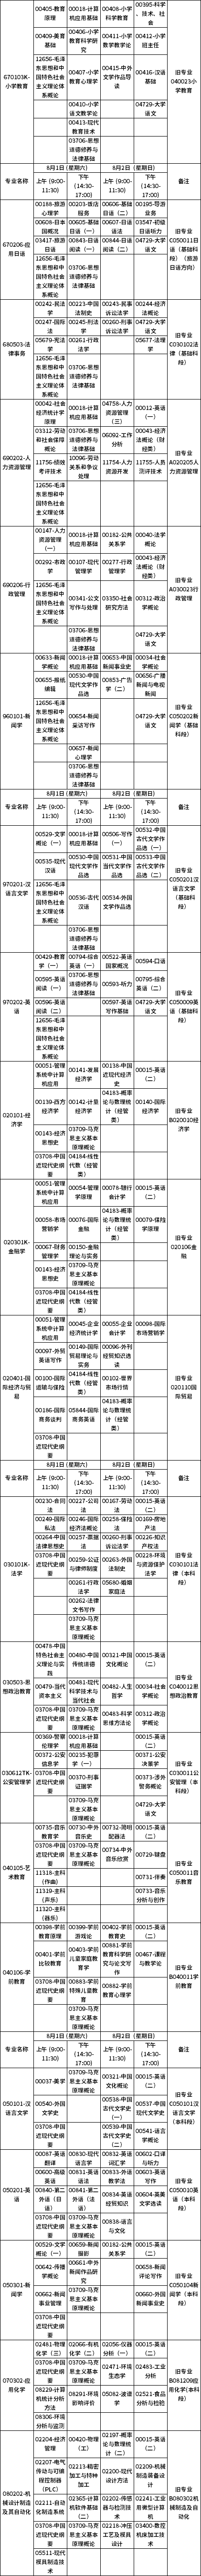 广西2020年8月自考课程安排表